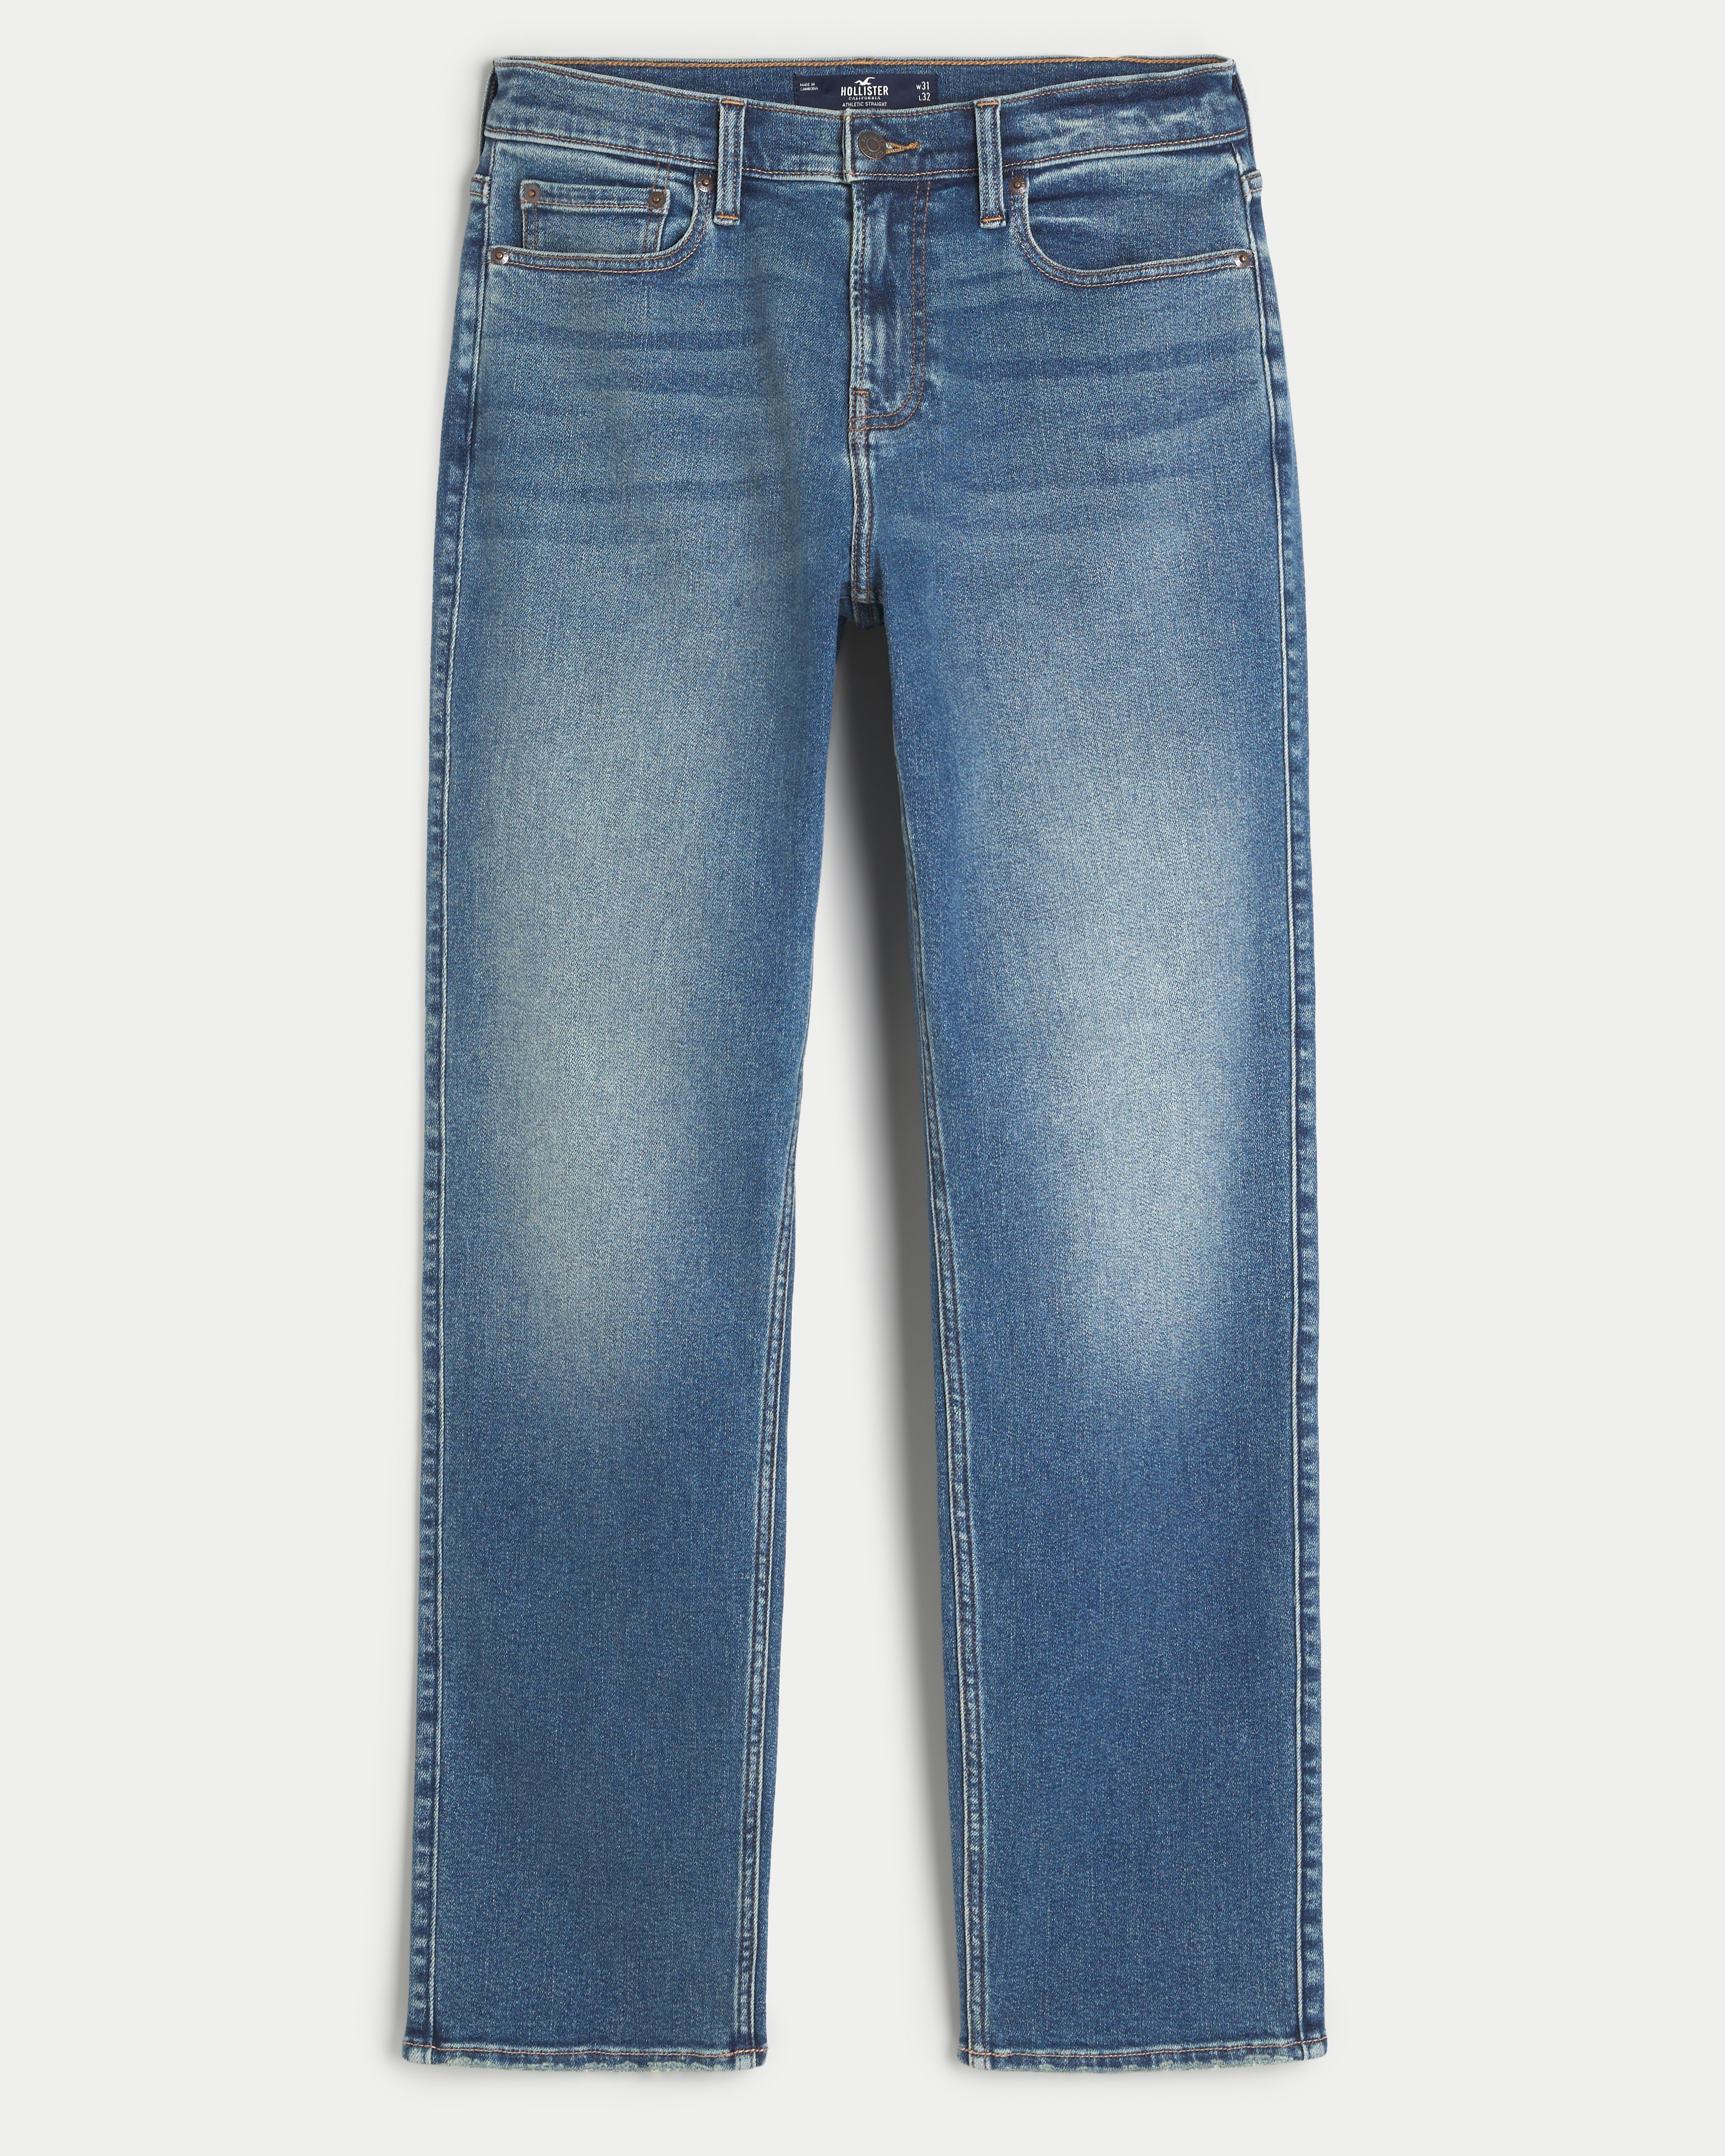 Hollister straight leg dark wash jeans​